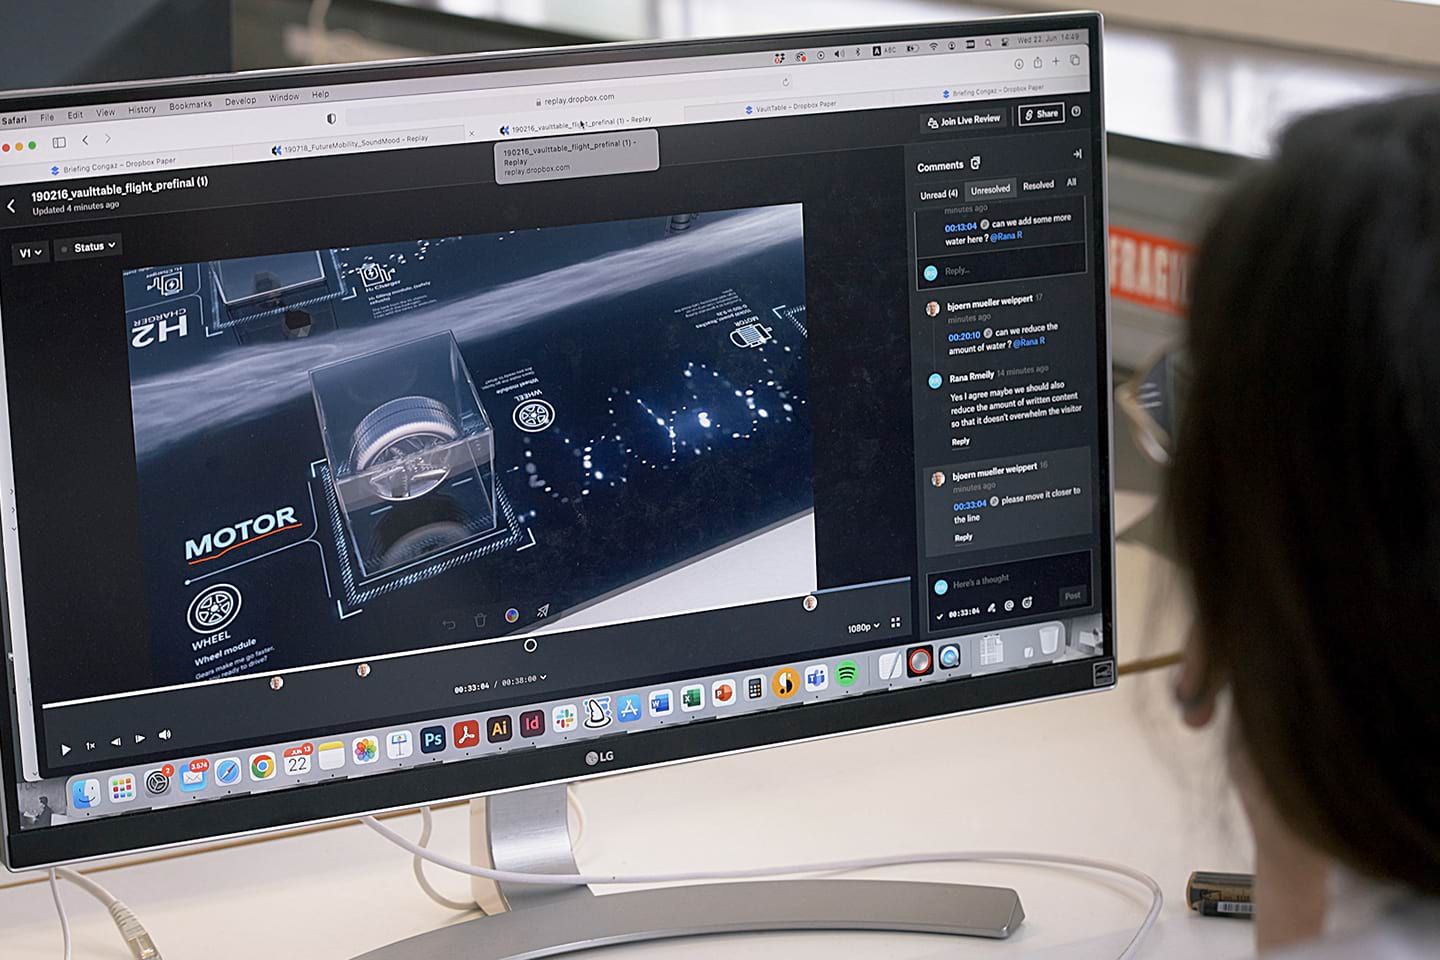 La pantalla de la computadora muestra a una persona trabajando en ediciones de video con Dropbox Replay.